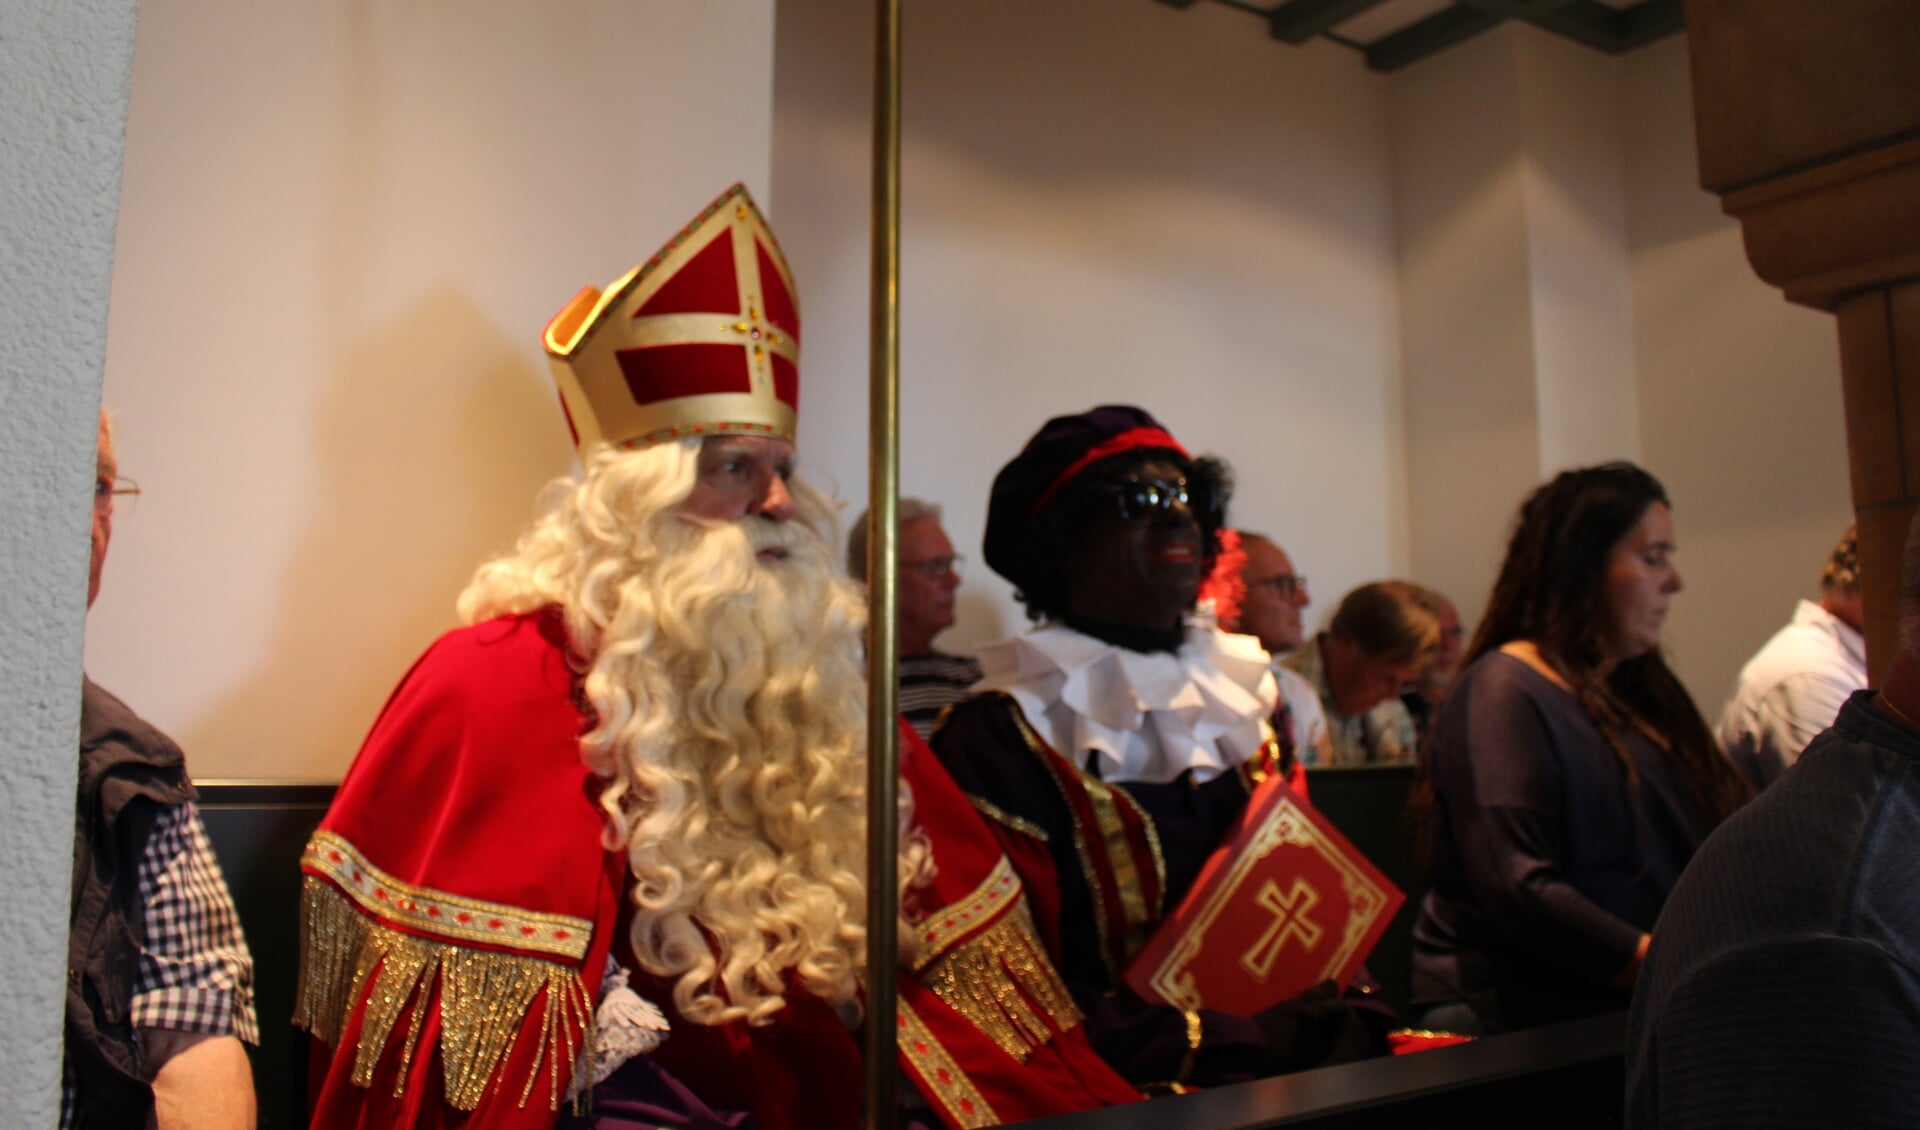 Sinterkaas en zijn hoofdpiet op de publieke tribune in de raadszaal tijdens het debat over subsidie voor het Sinterklaasfeest.